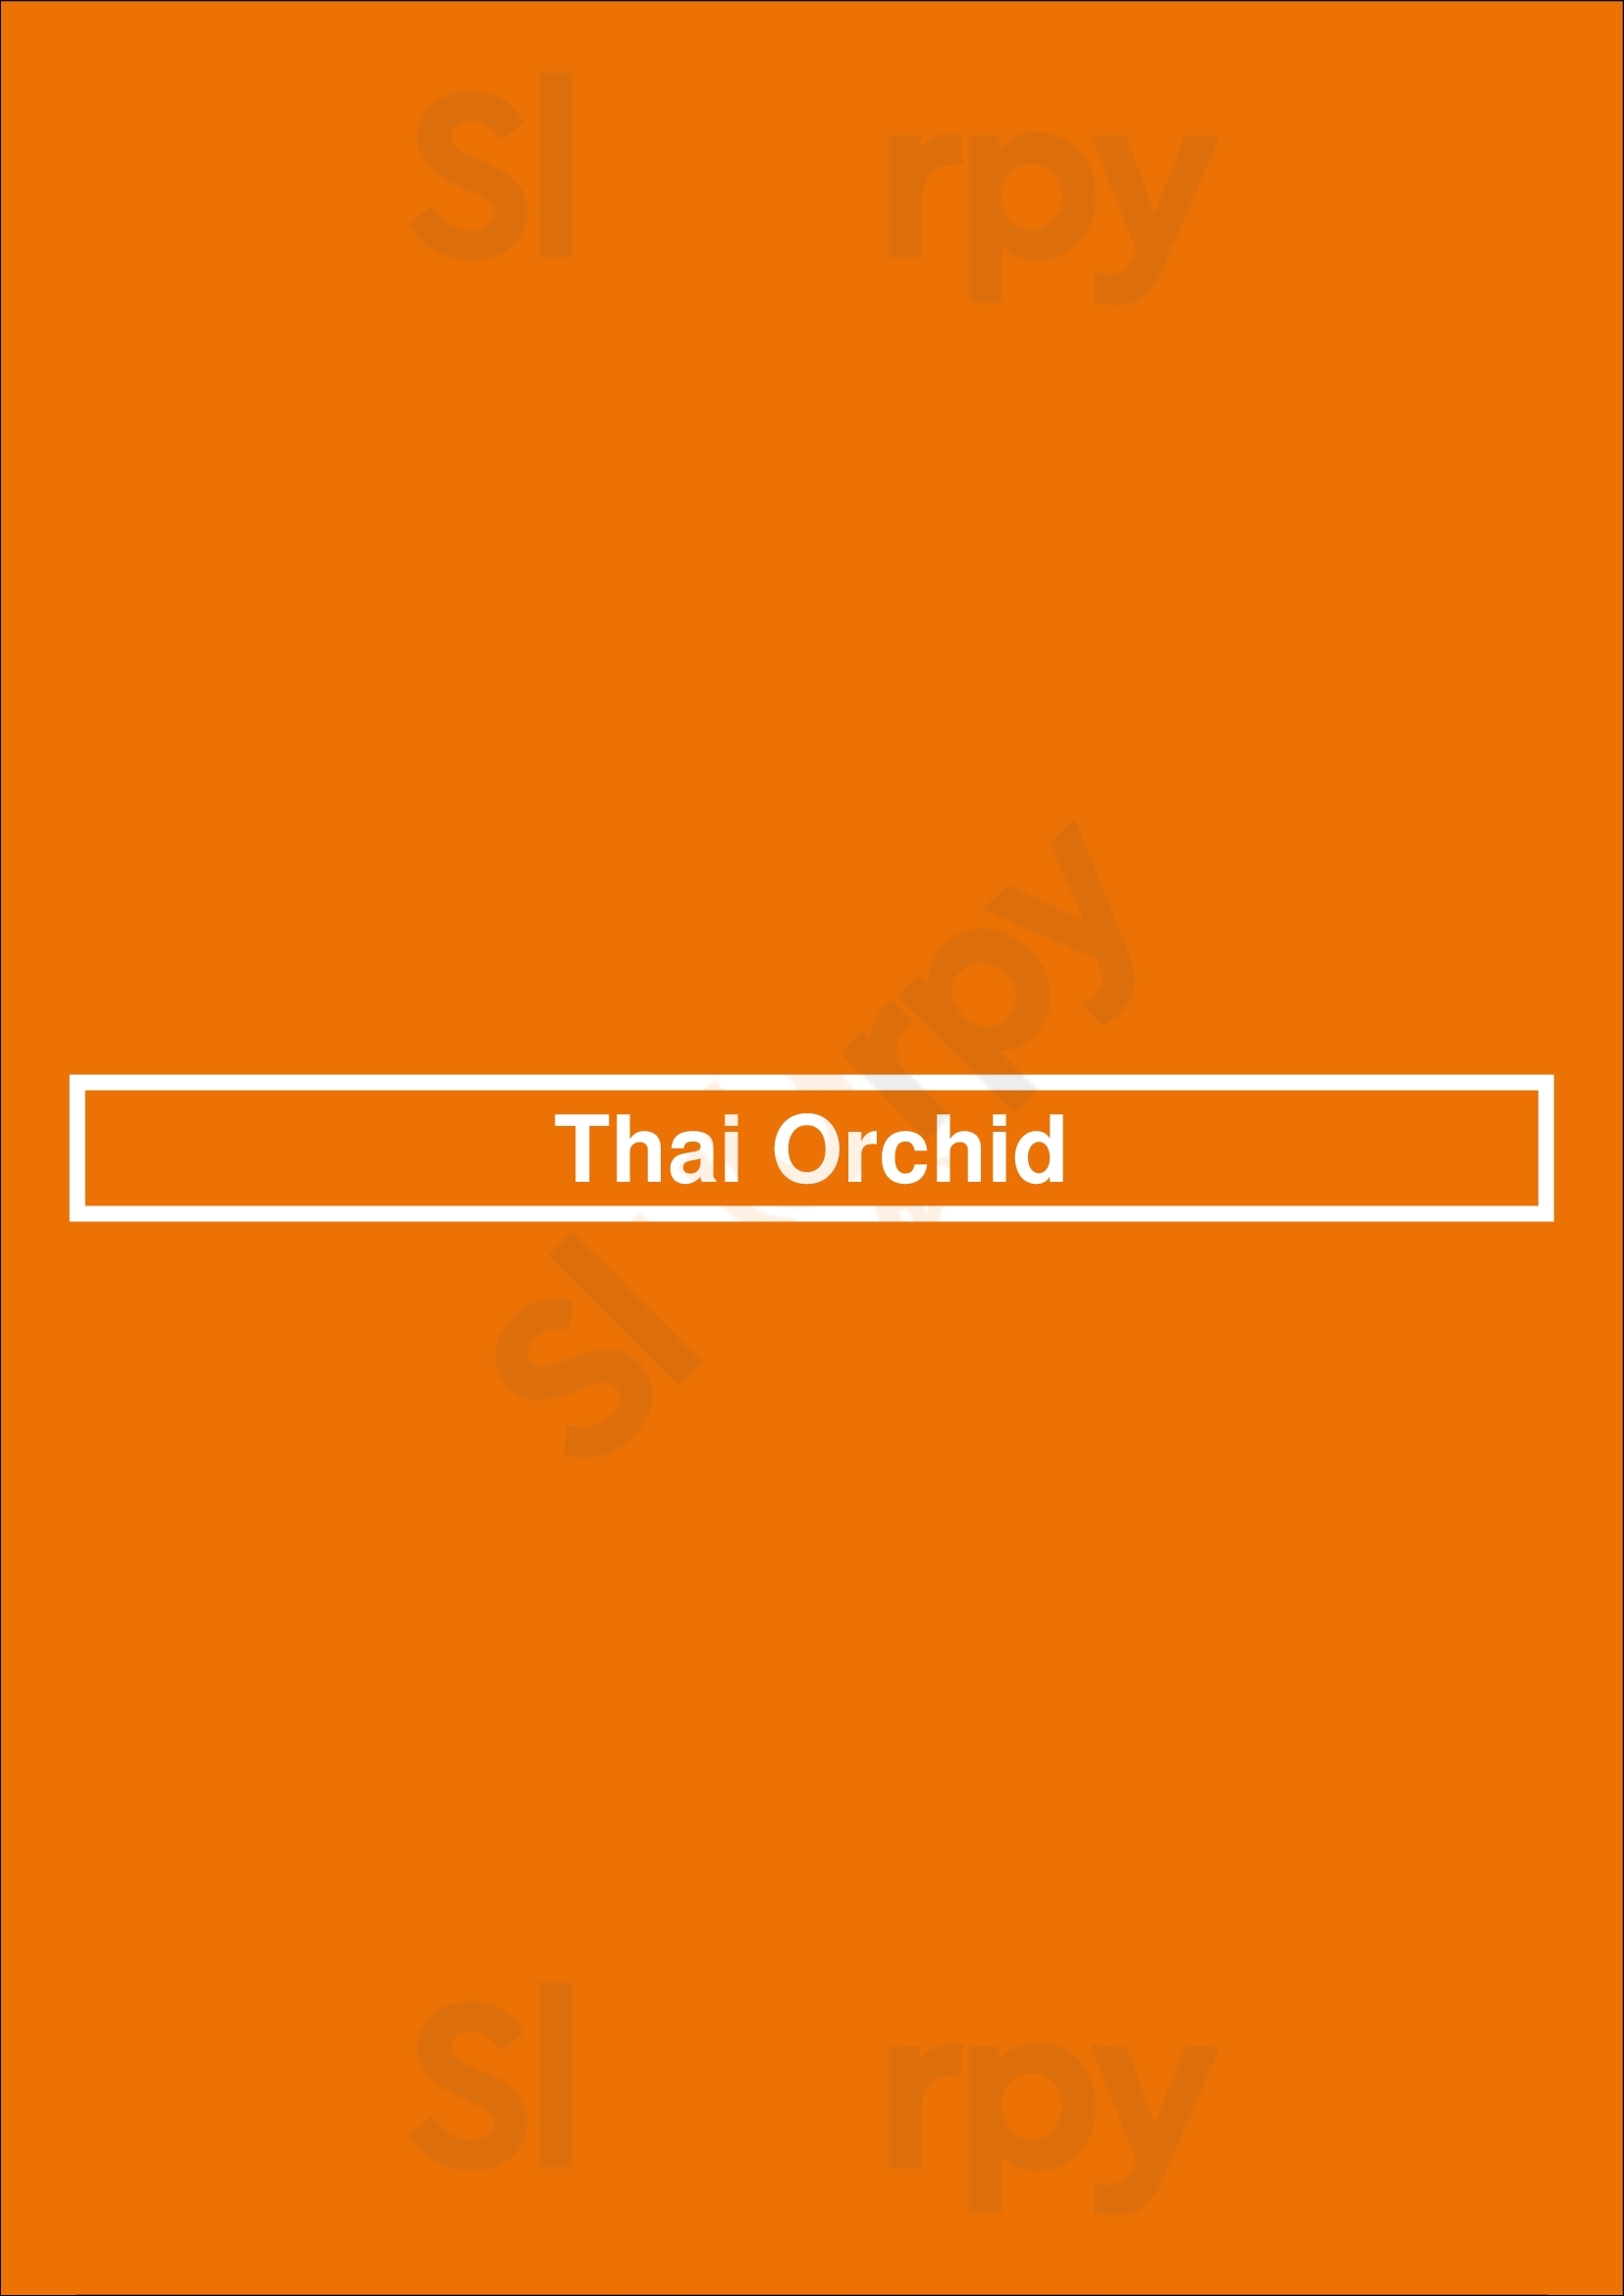 Thai Orchid Dublin Menu - 1